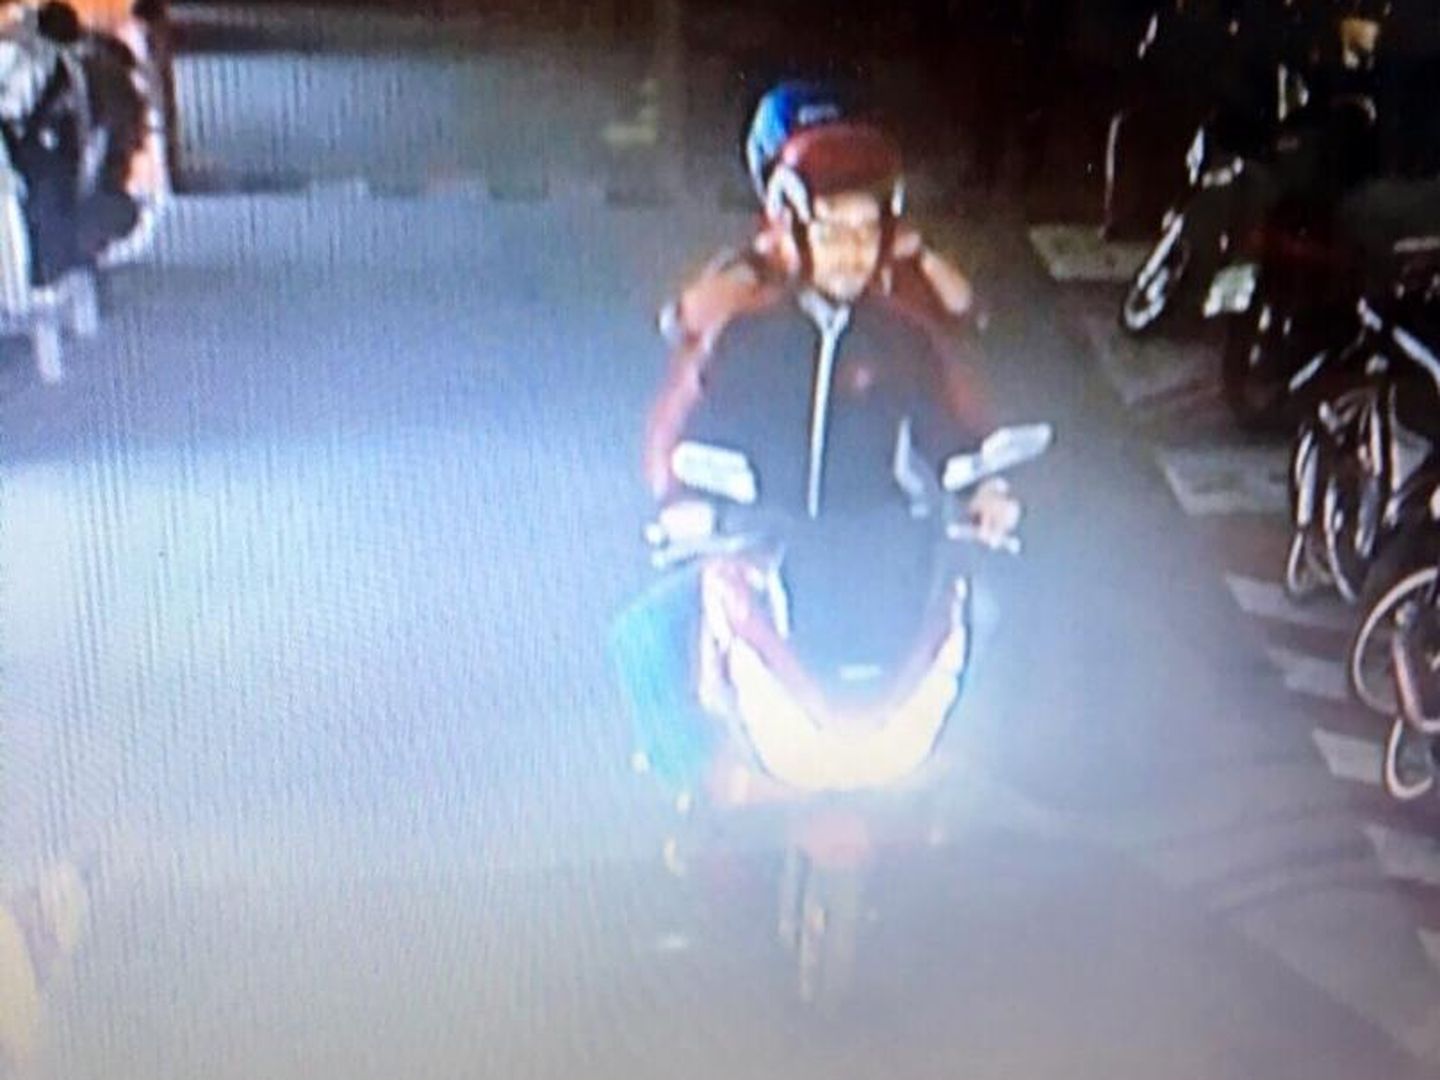 El sospechoso Artur Segarra yendo en moto con su novia a retirar dinero en un cajero automático en Ayuthaya, en una imagen difundida por la policía tailandesa